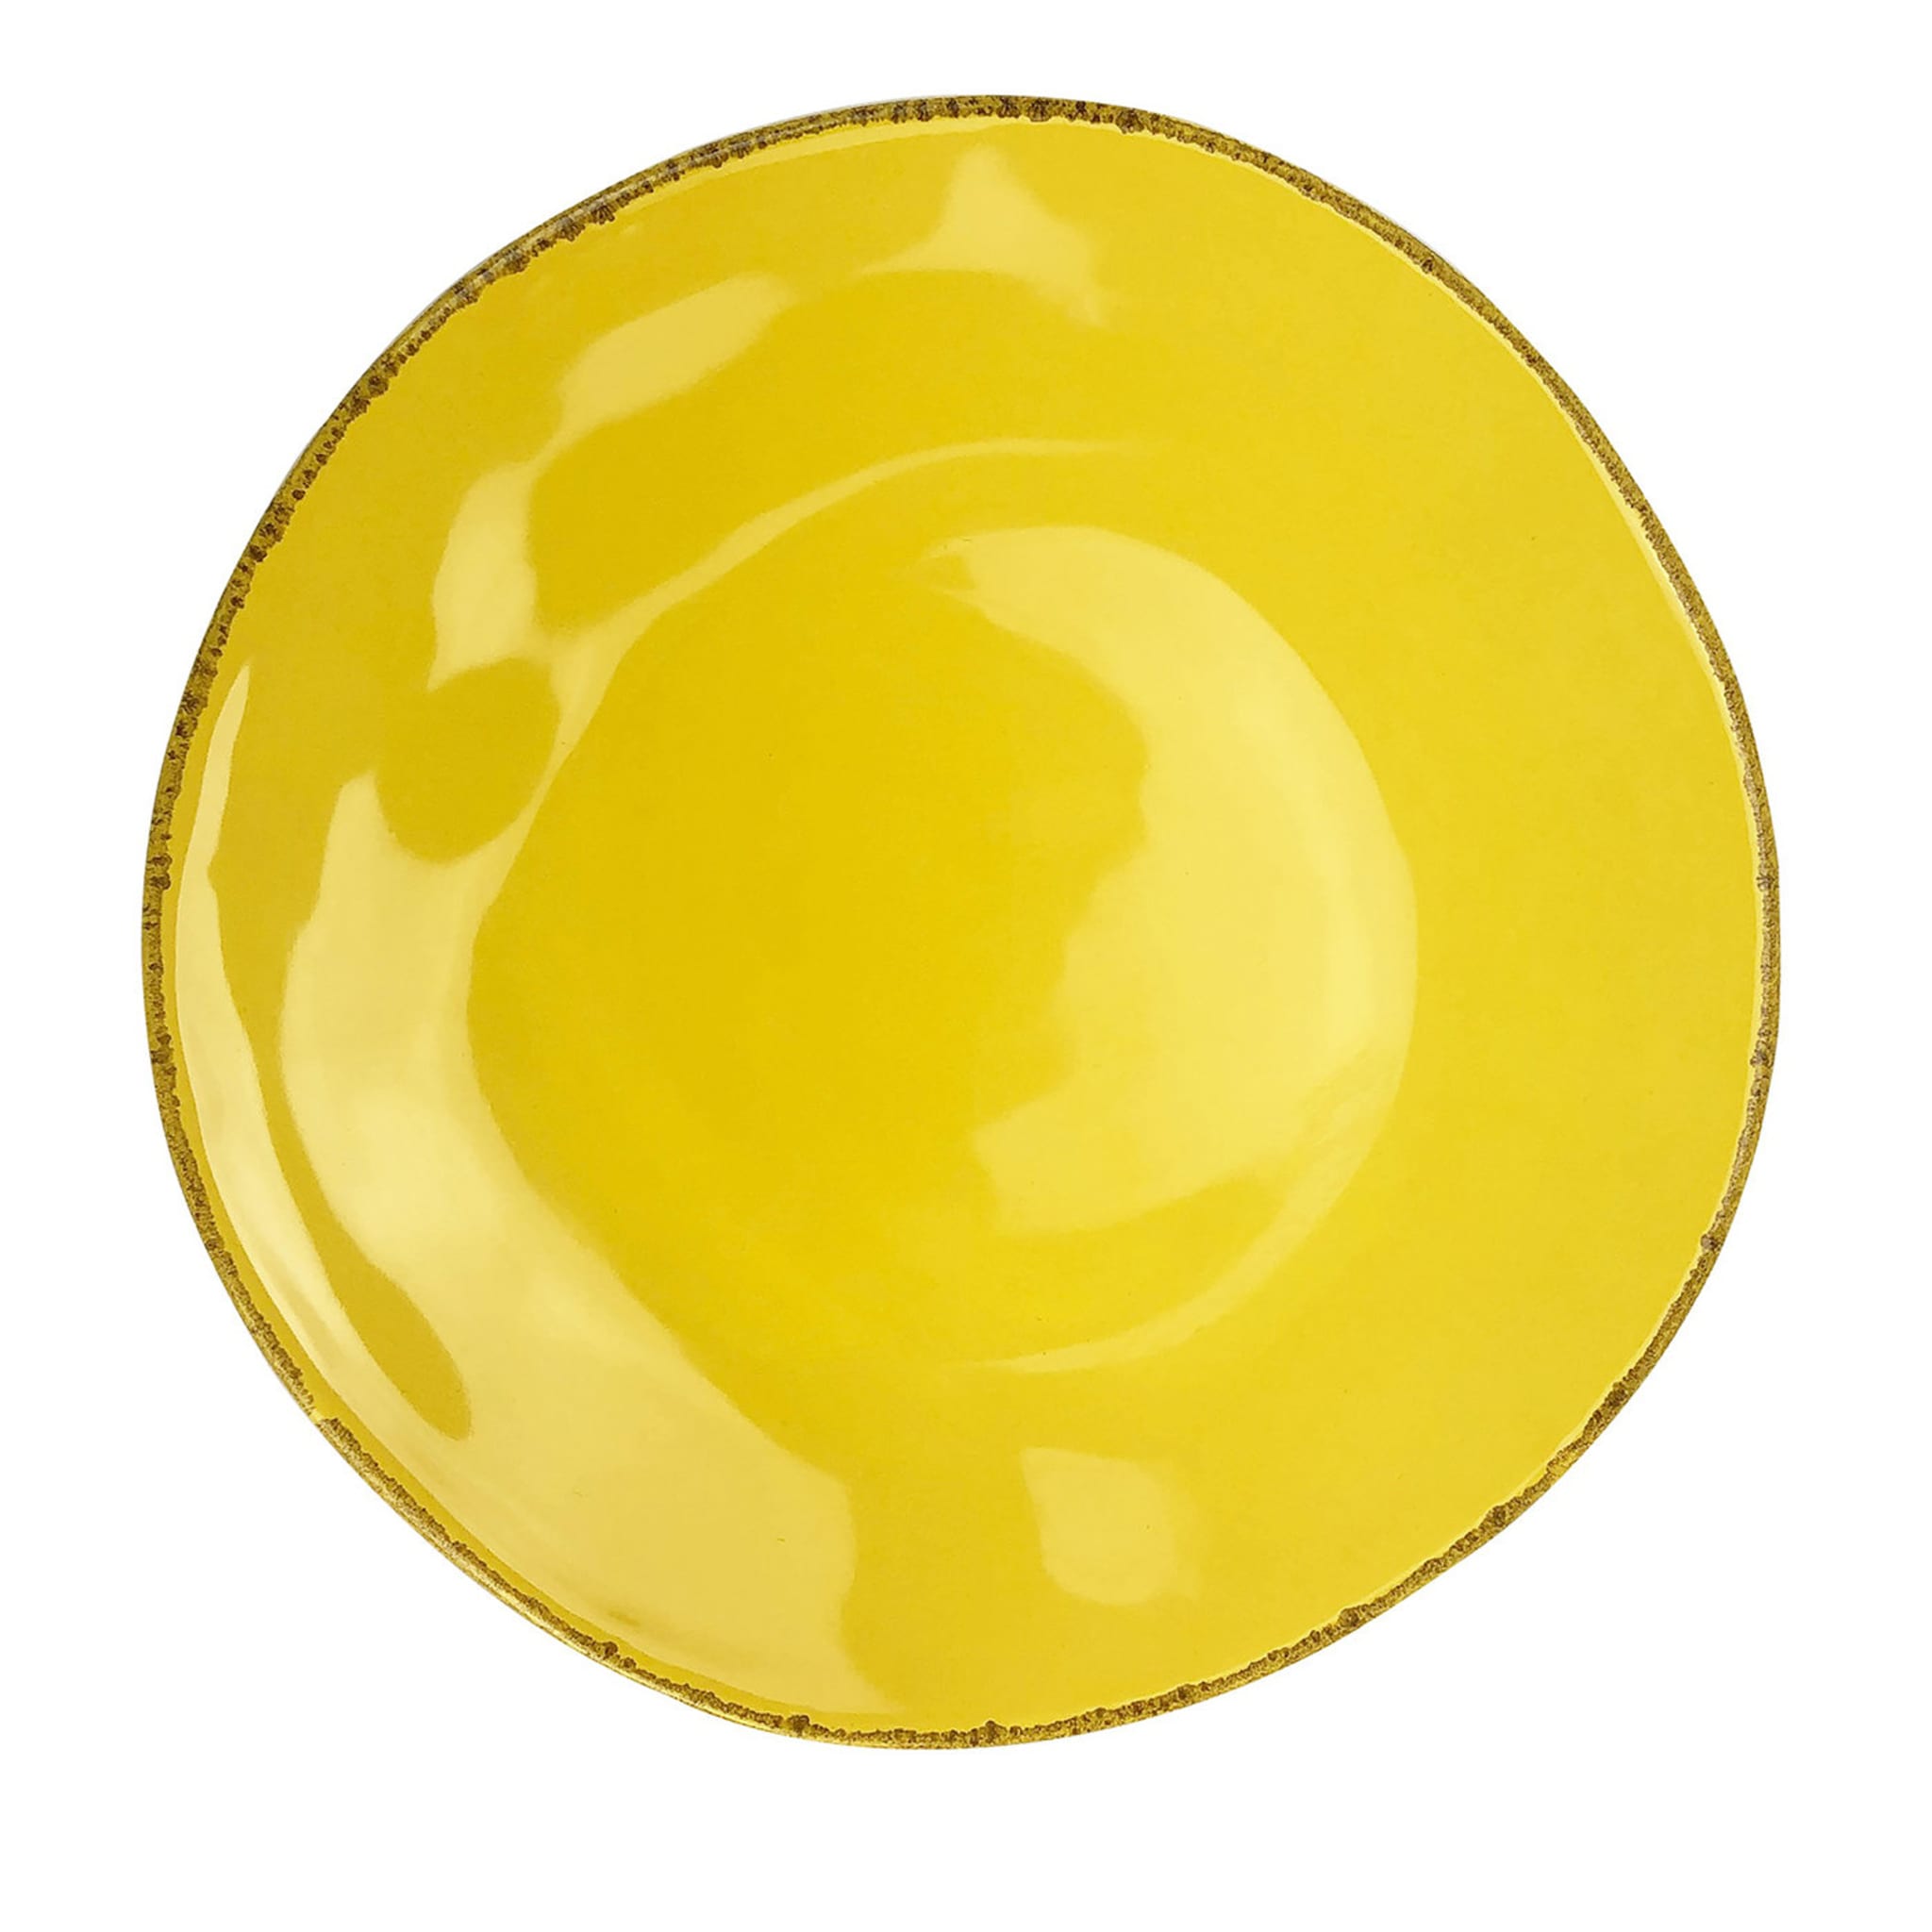 Materia 6er-Set runde gelbe Platzteller - Hauptansicht